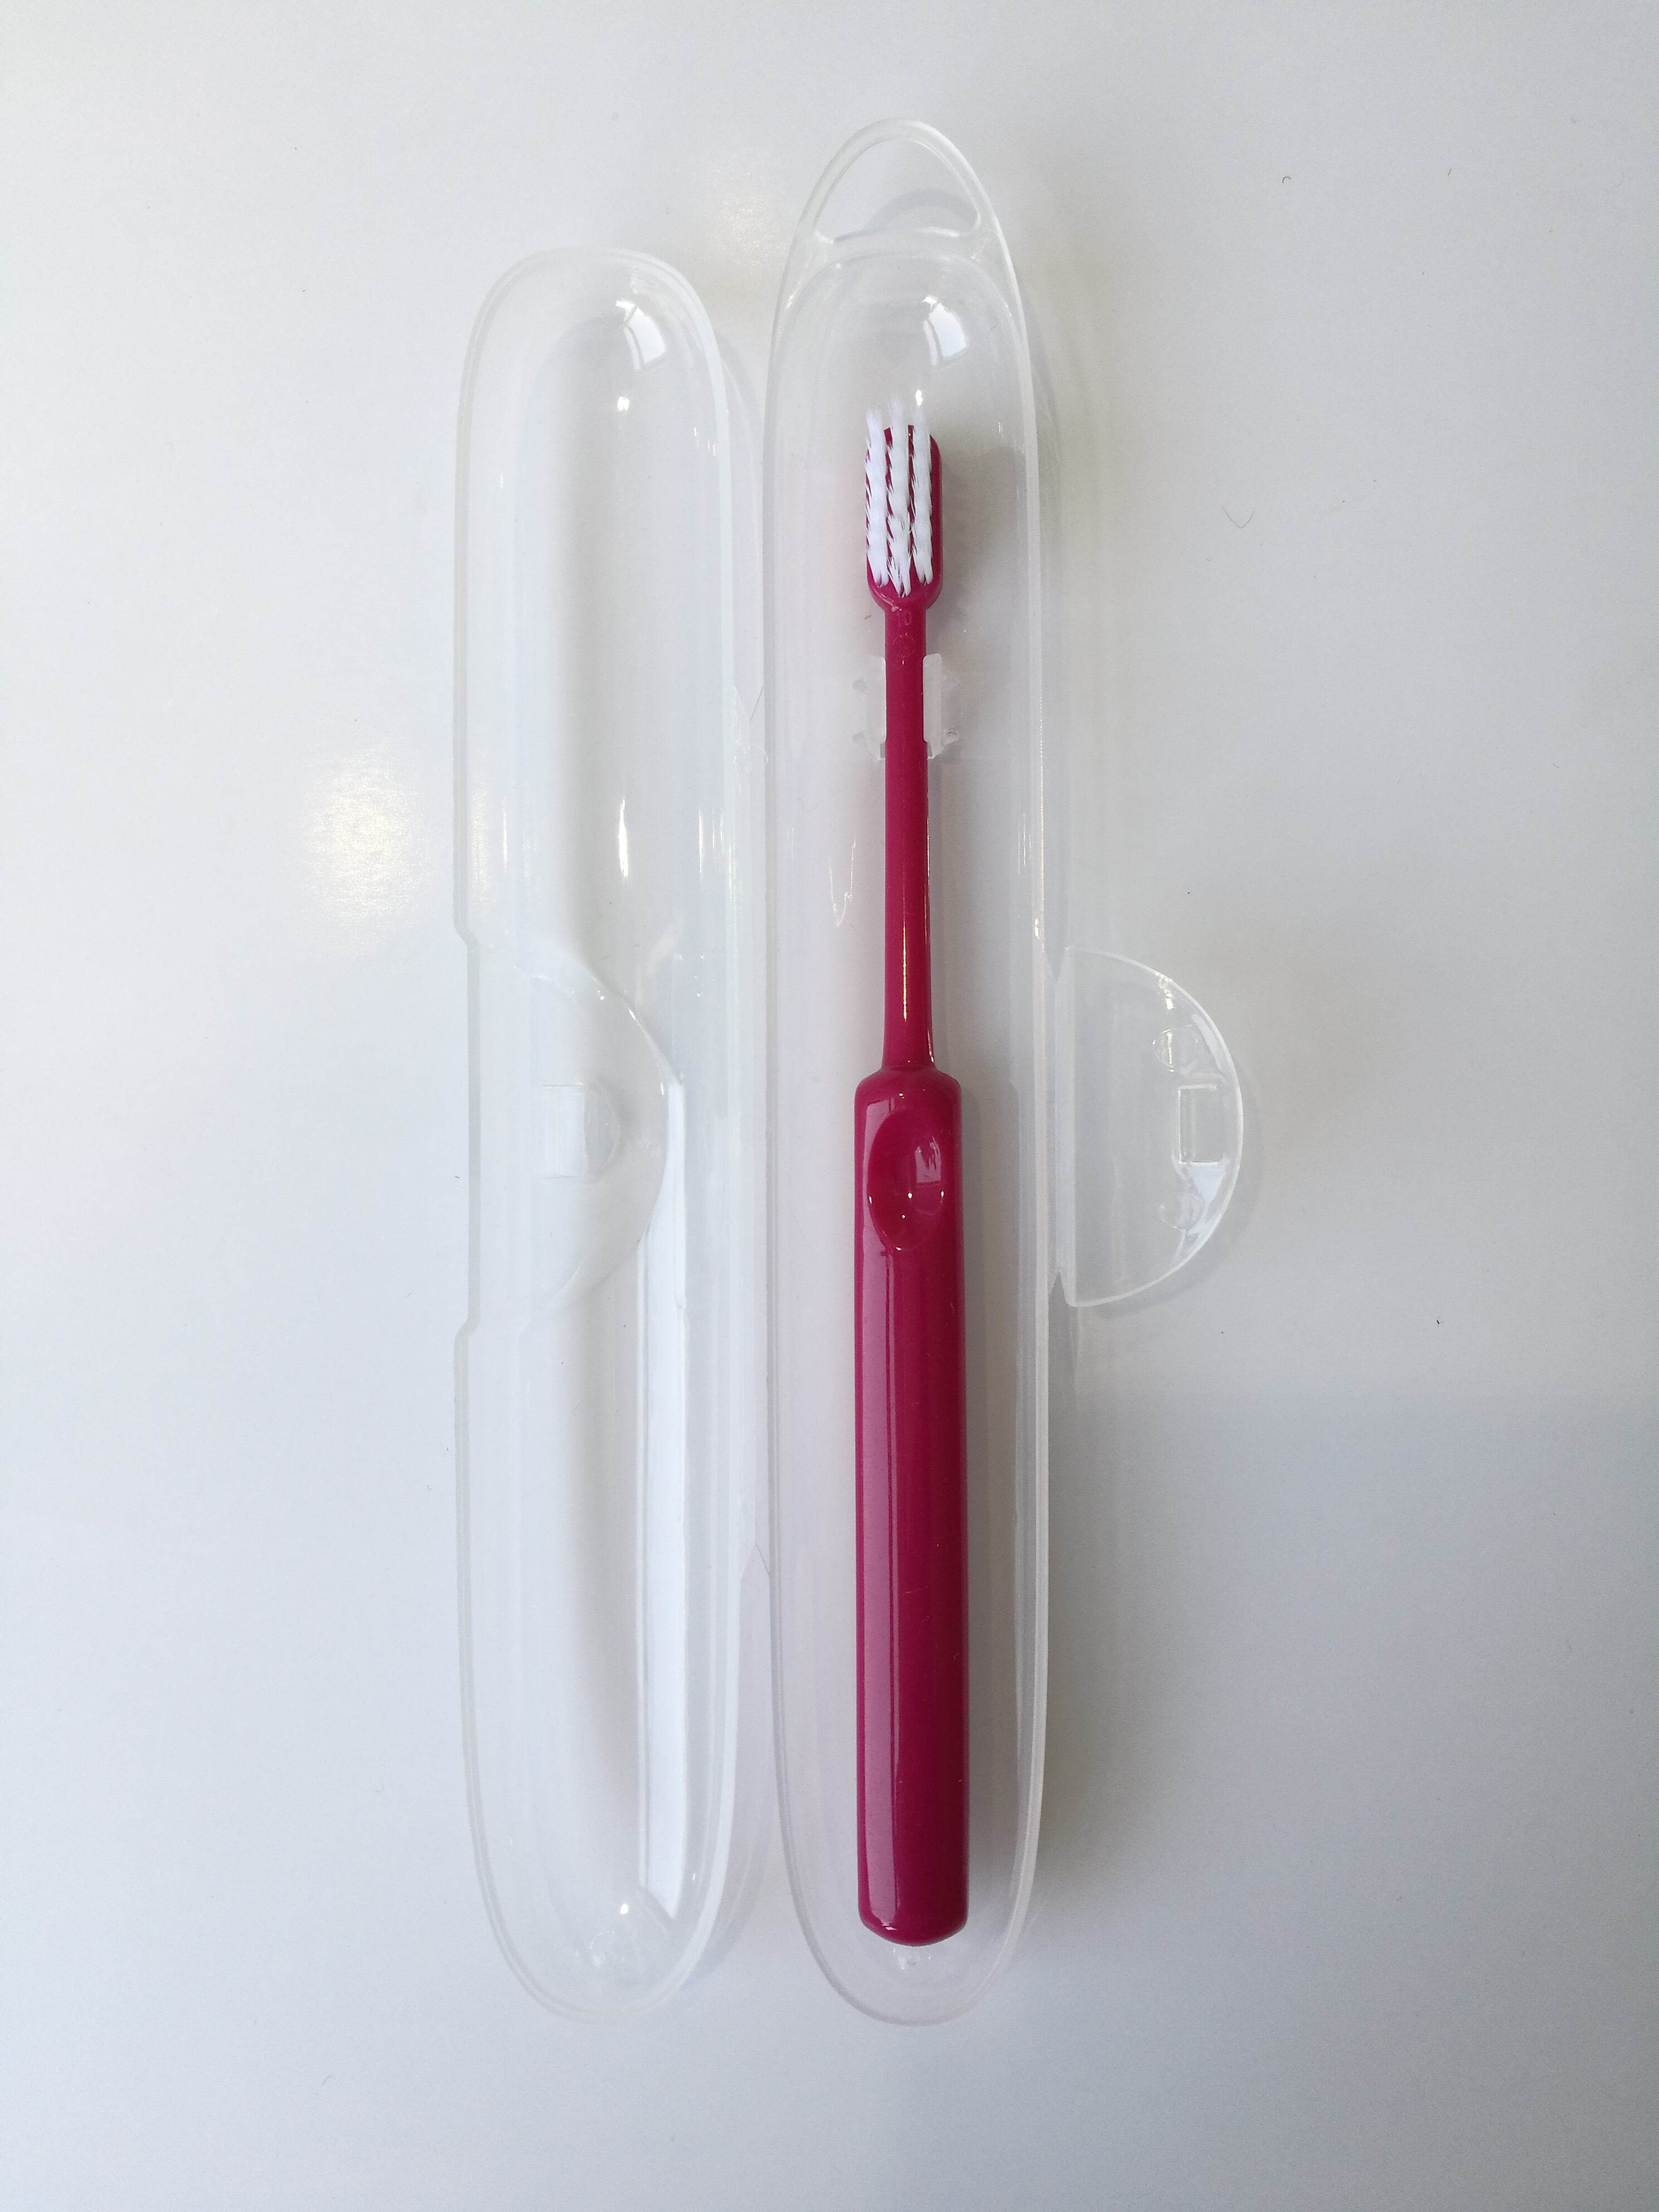 यंग्ज़हौ नया आगमन प्लास्टिक टूथपेस्ट डिस्पेंसर 2 कप चुंबकीय दीवार माउंट टूथब्रश धारक आपूर्तिकर्ता